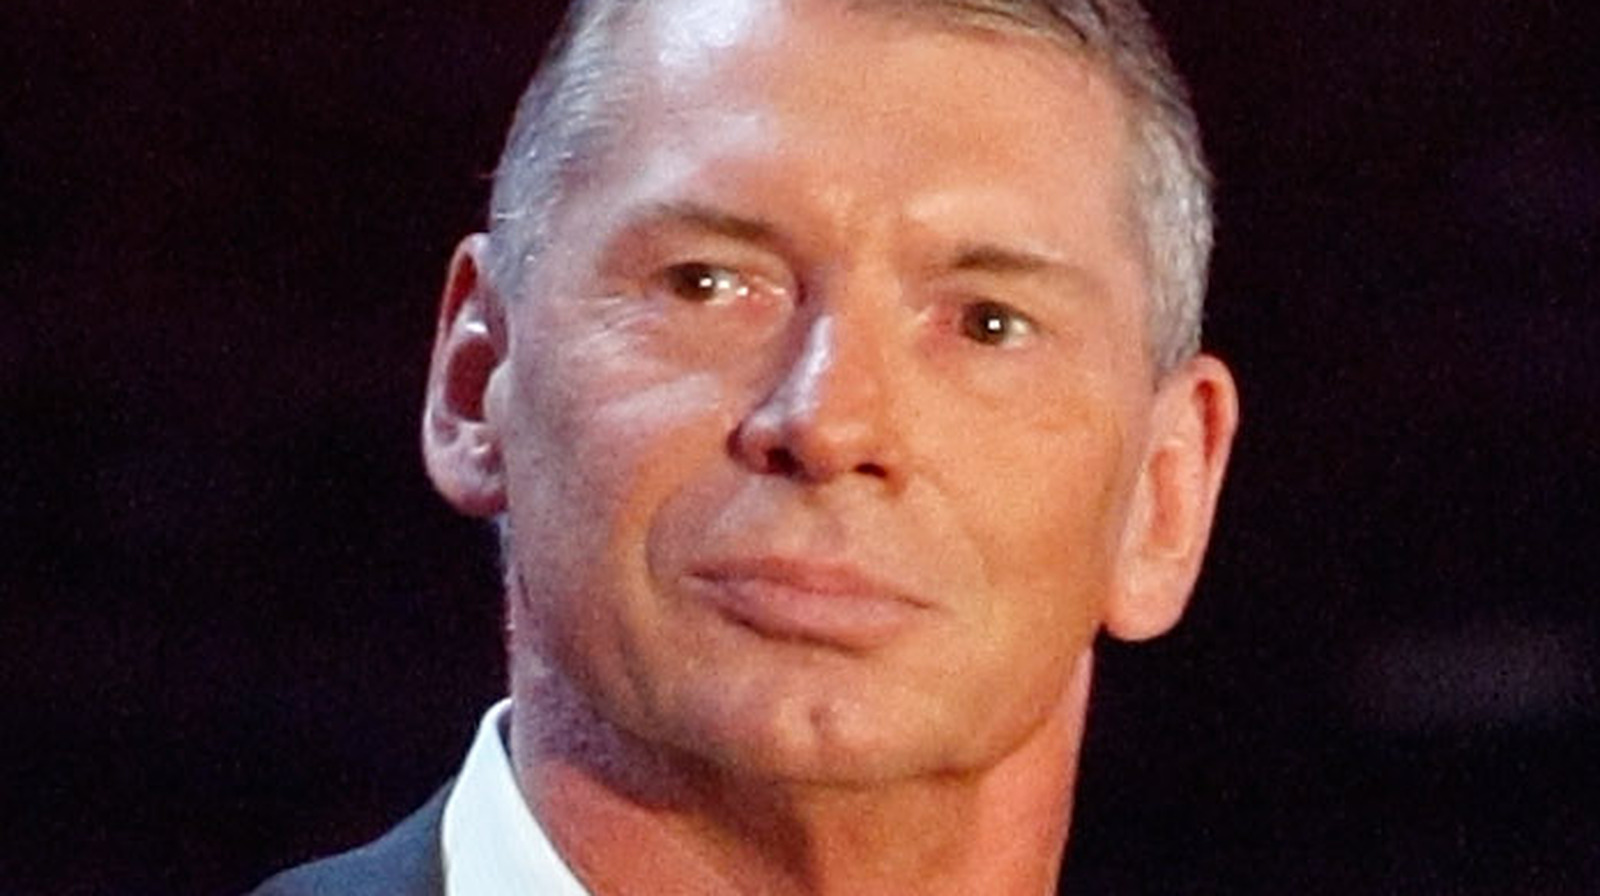 Según los informes, Vince McMahon regresa a la oficina de la WWE y está haciendo sugerencias